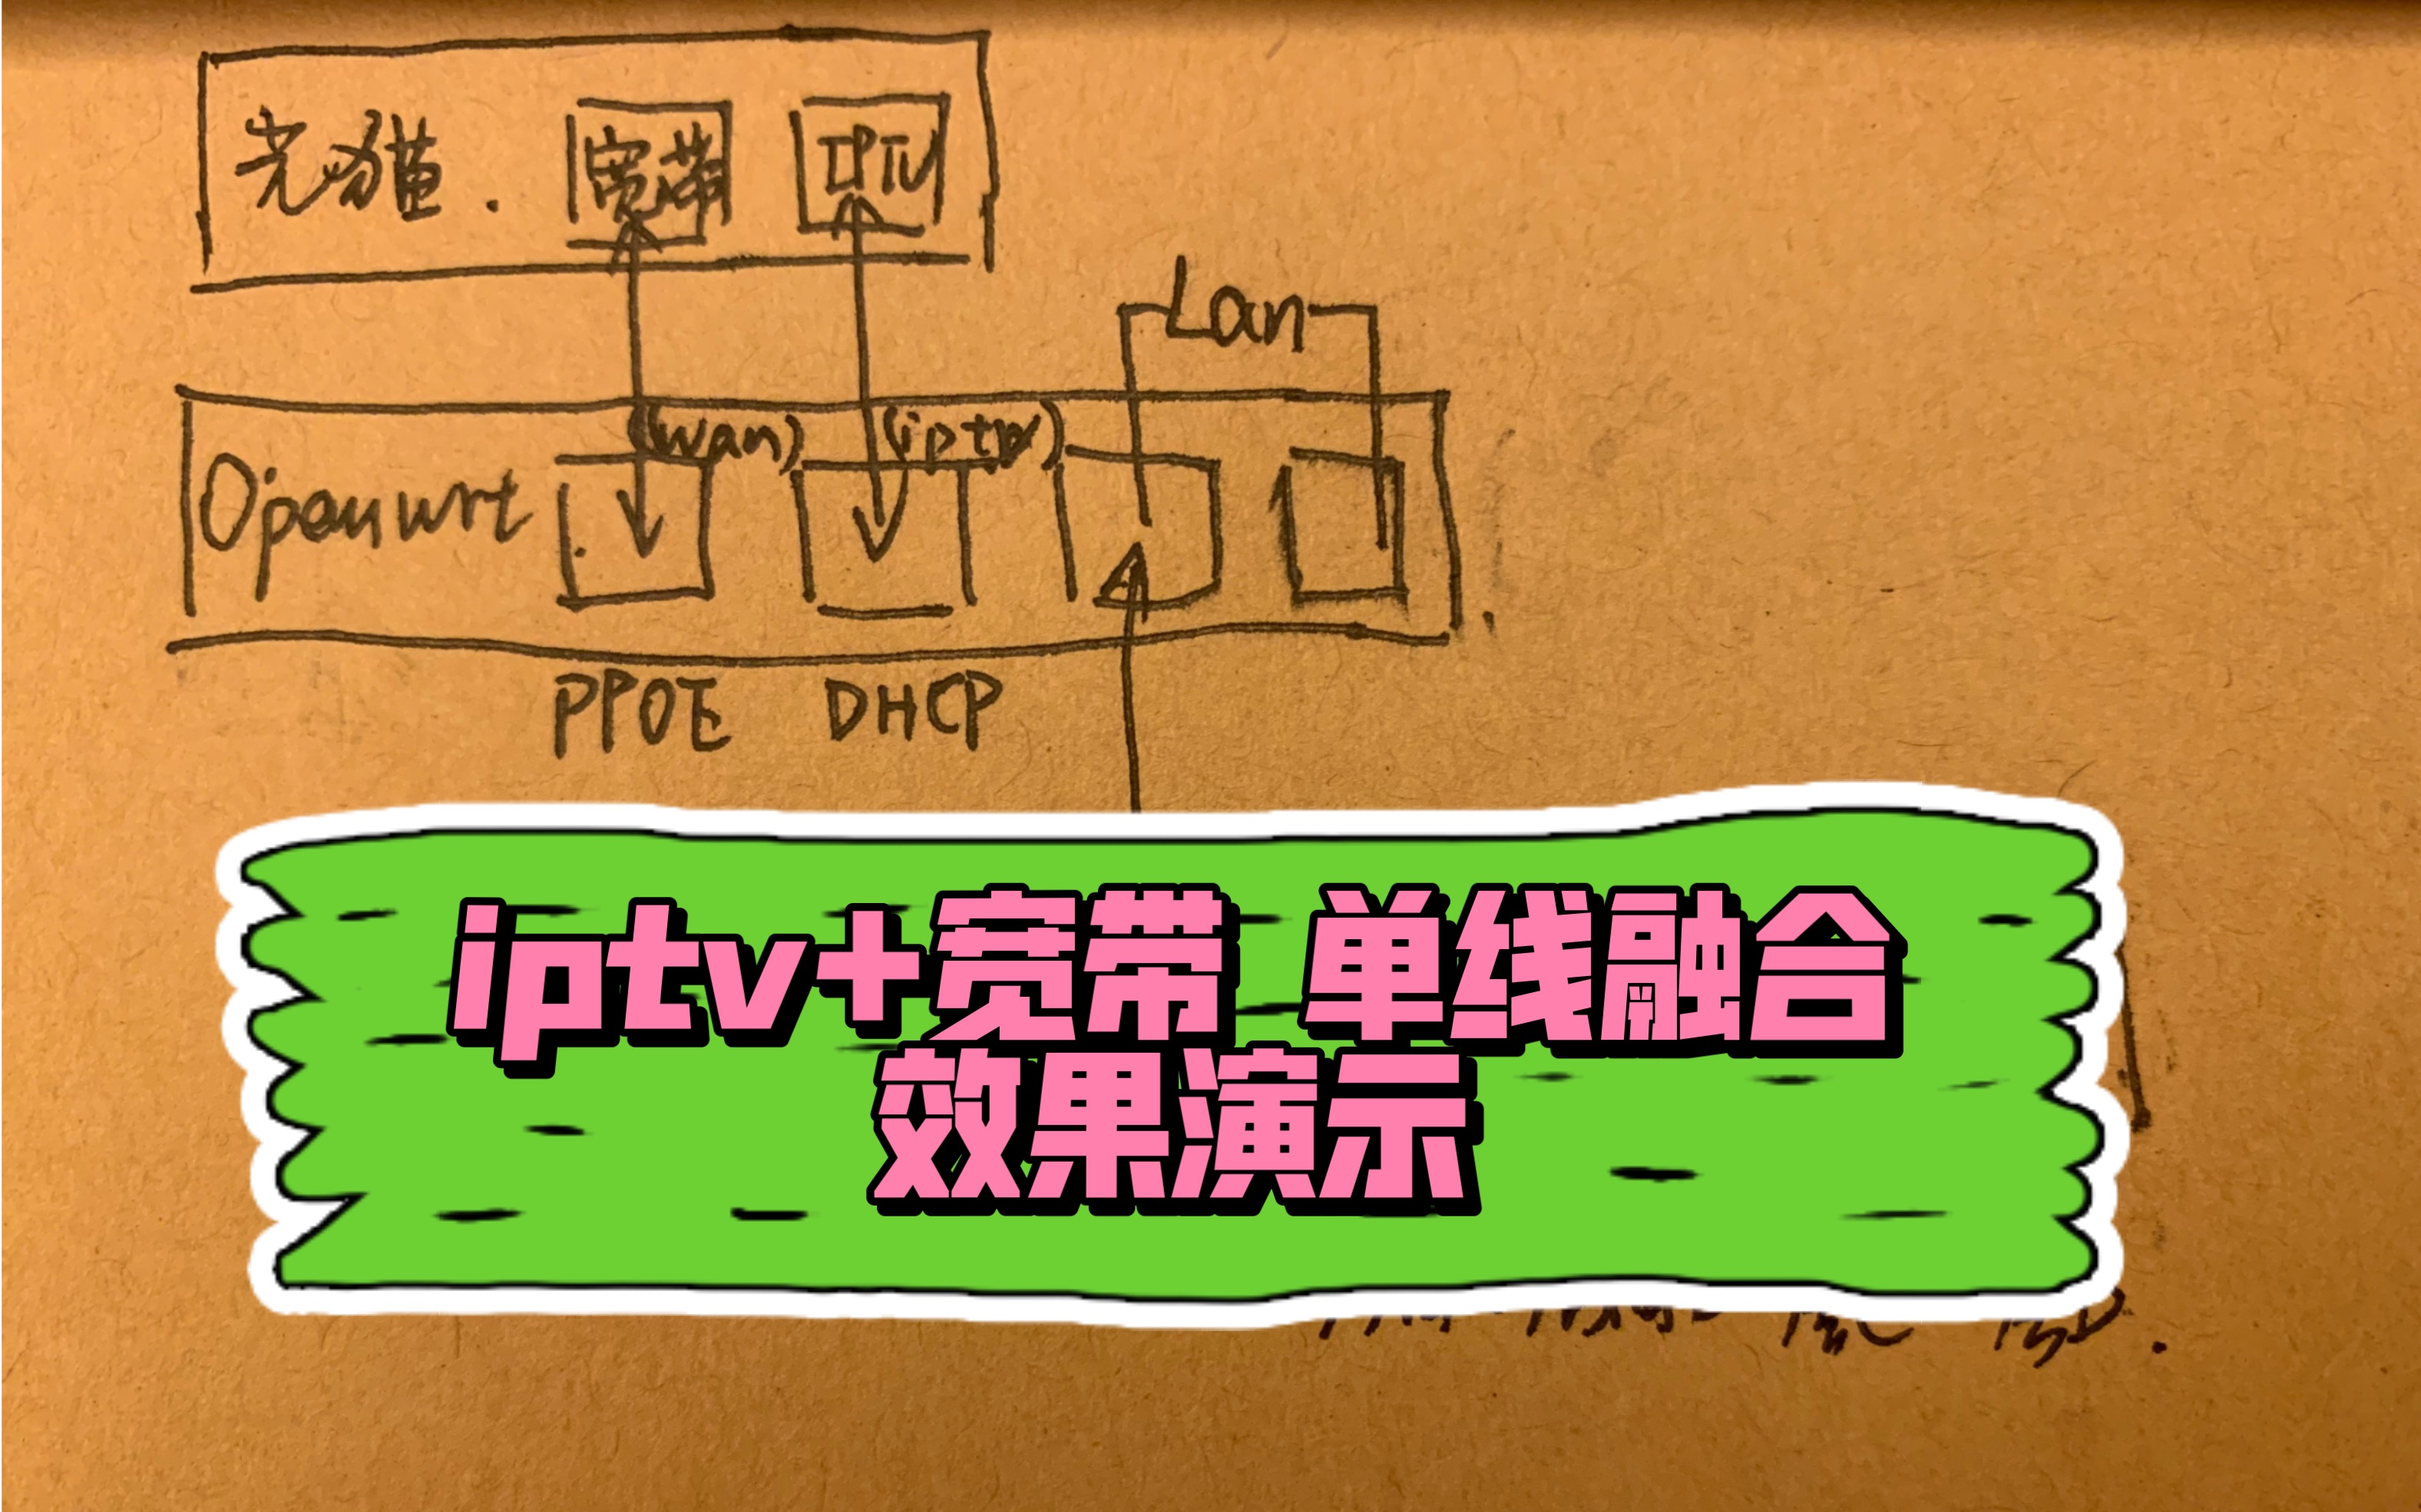 IPTV +宽带单线融合效果演示，丢掉机顶盒，任意设备看iptv 浙江电信 Openwrt